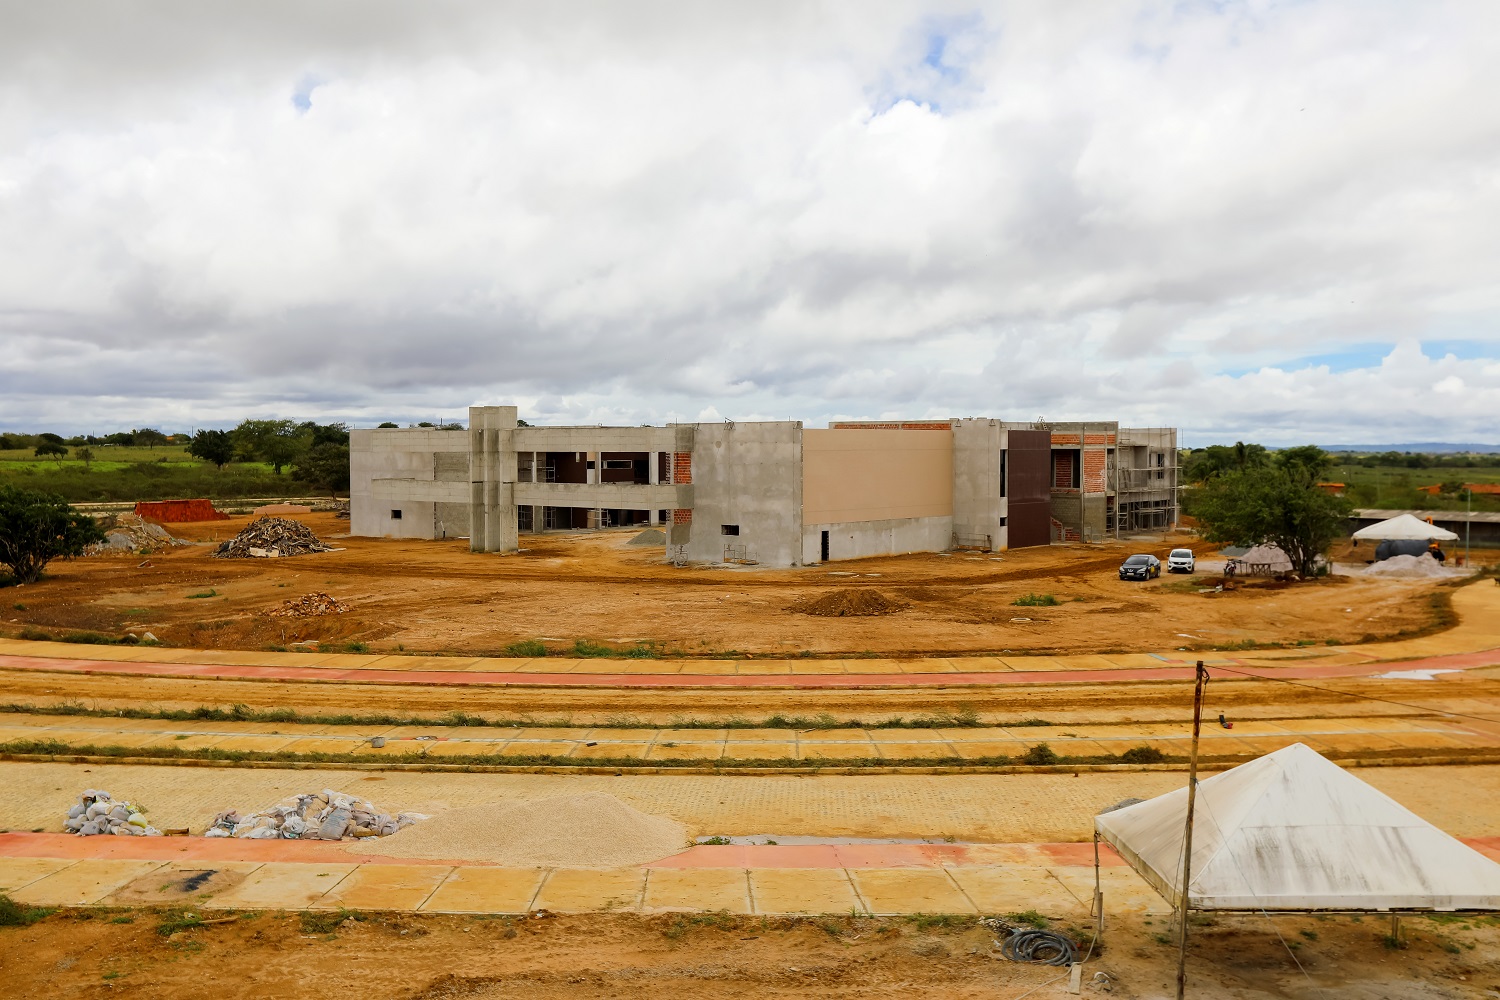 Imagem da sede definitiva do Campus do Sertão, em construção (Foto: Adilson Andrade/AscomUFS)